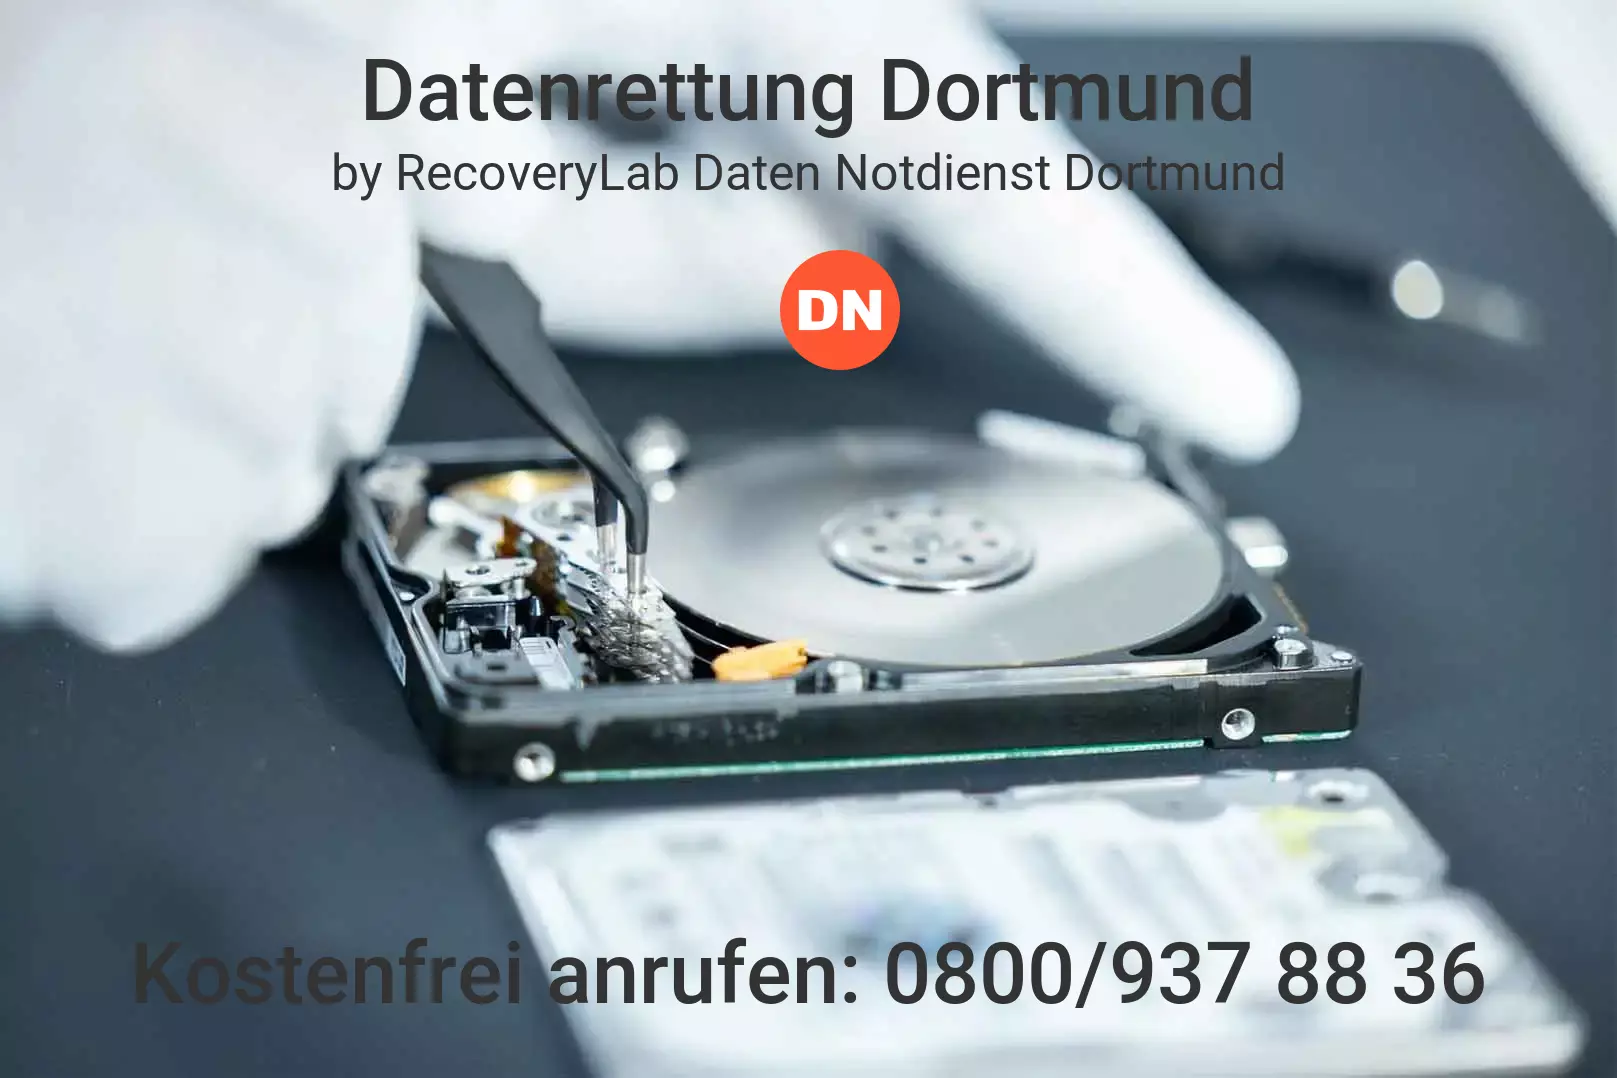 Fallstudie zu erfolgreicher Datenrettung externe Festplatte Dortmund